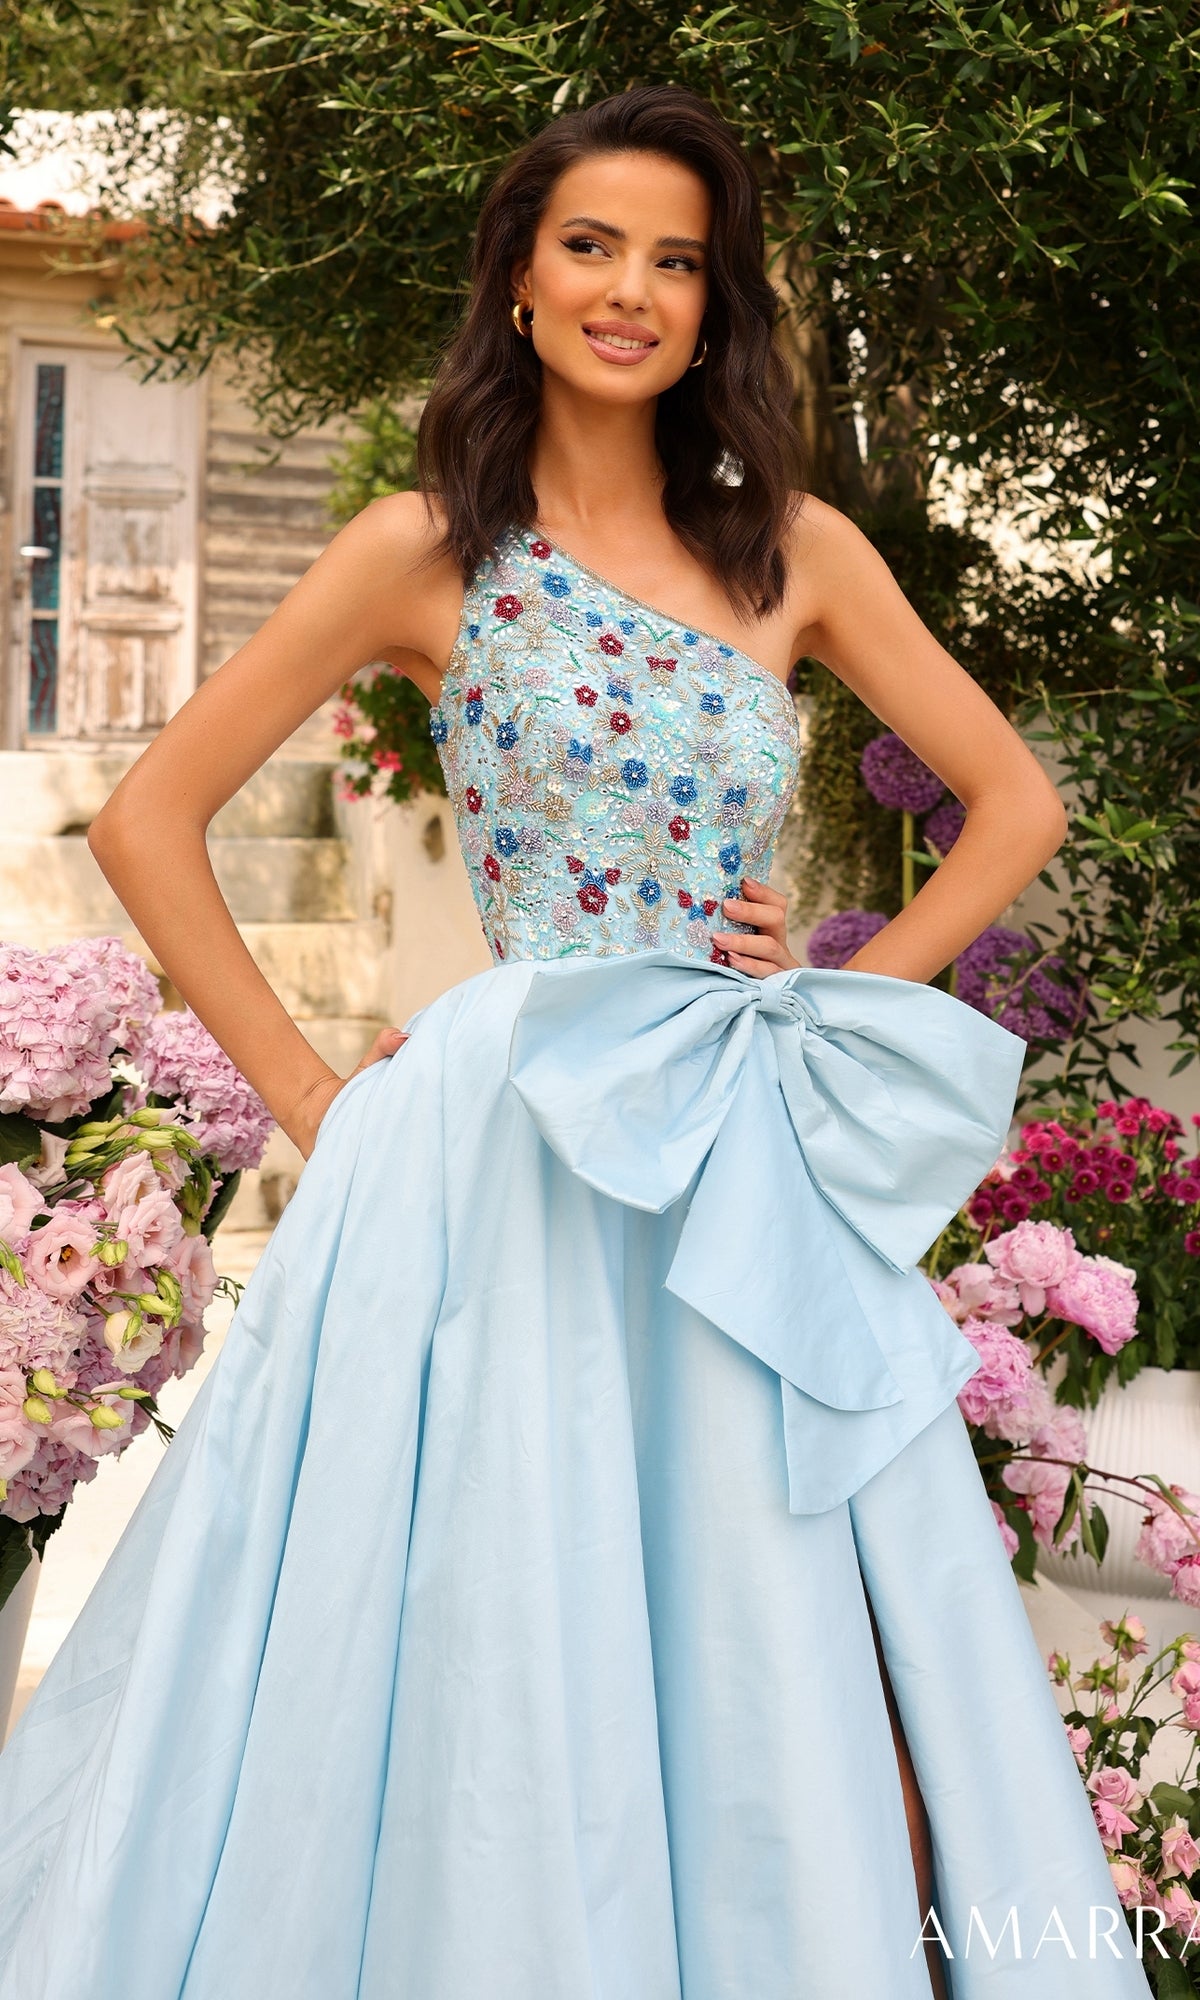 Amarra Long Prom Dress 94041